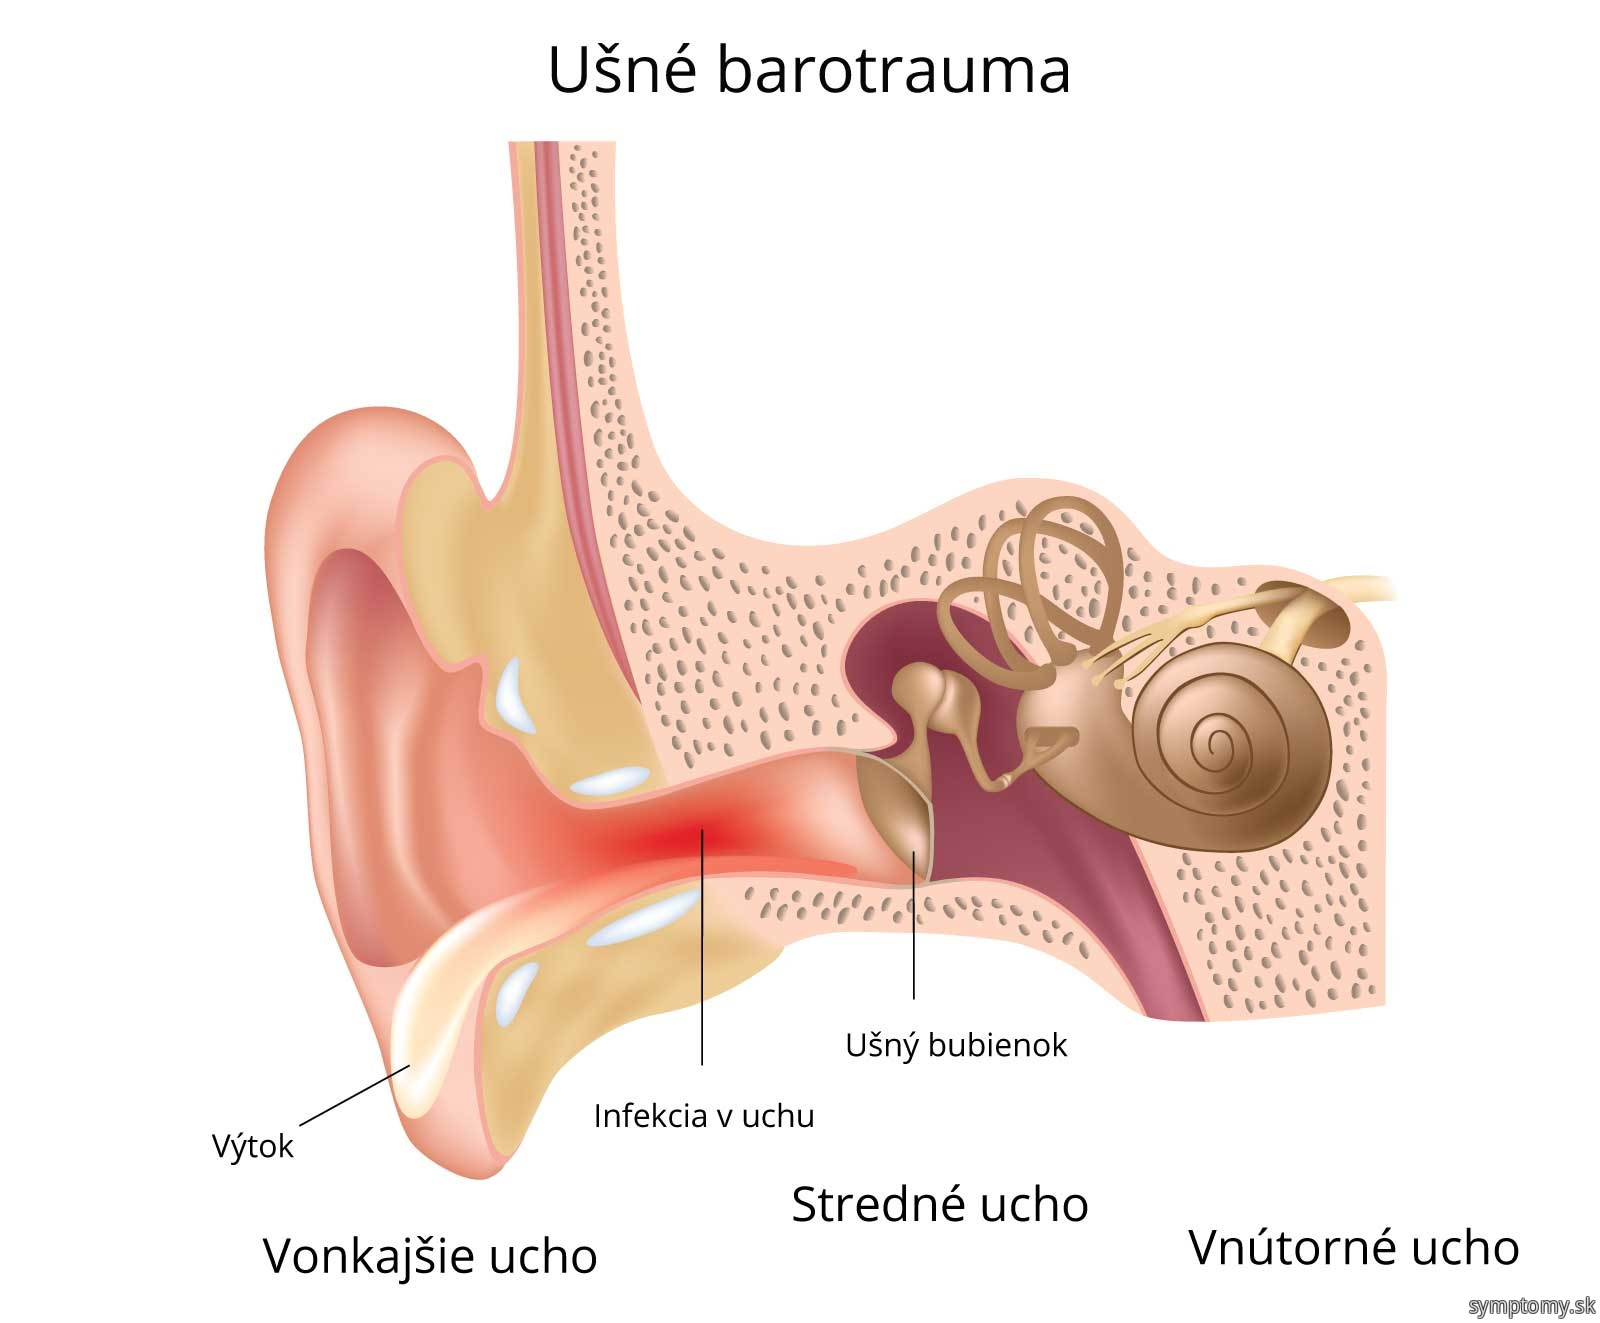 Ušné barotrauma